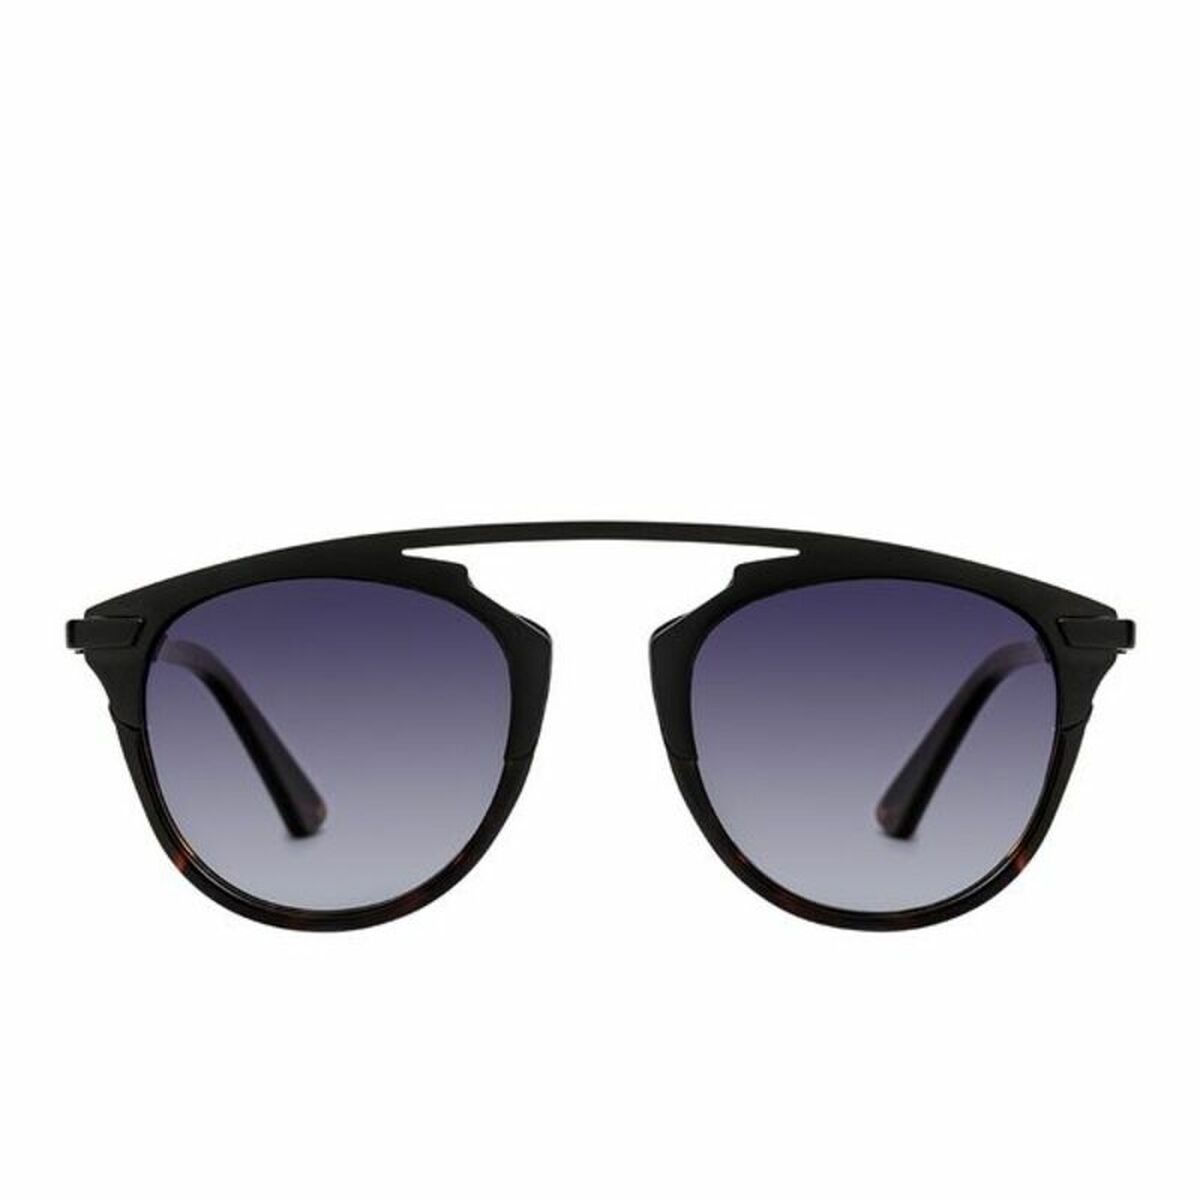 Okulary przeciwsłoneczne Damskie Paltons Sunglasses 403